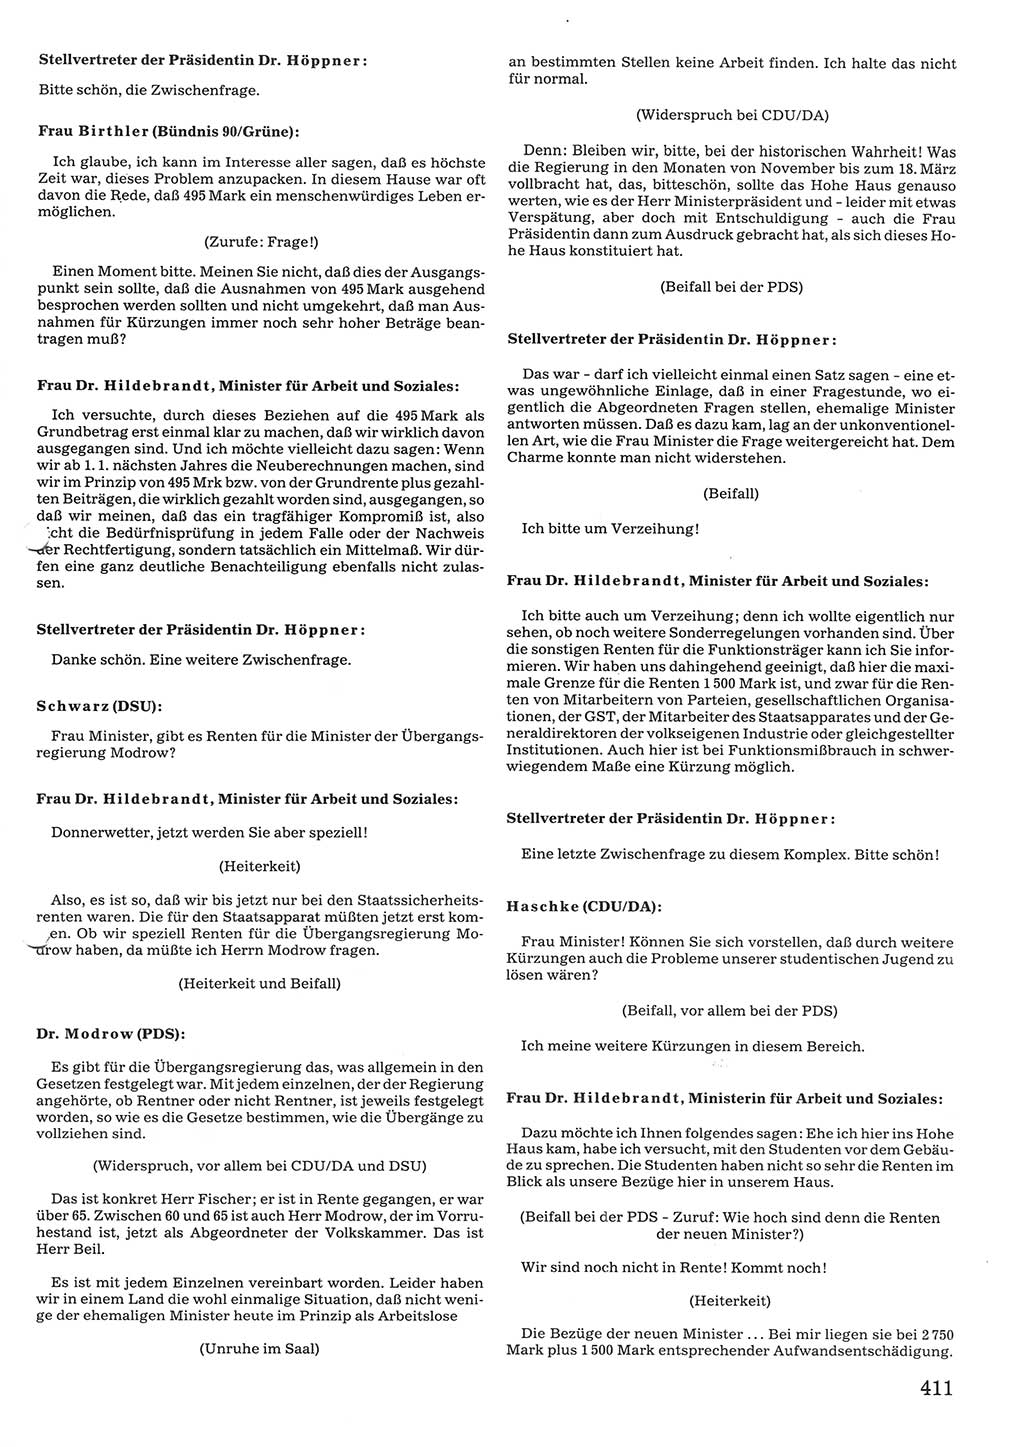 Tagungen der Volkskammer (VK) der Deutschen Demokratischen Republik (DDR), 10. Wahlperiode 1990, Seite 411 (VK. DDR 10. WP. 1990, Prot. Tg. 1-38, 5.4.-2.10.1990, S. 411)